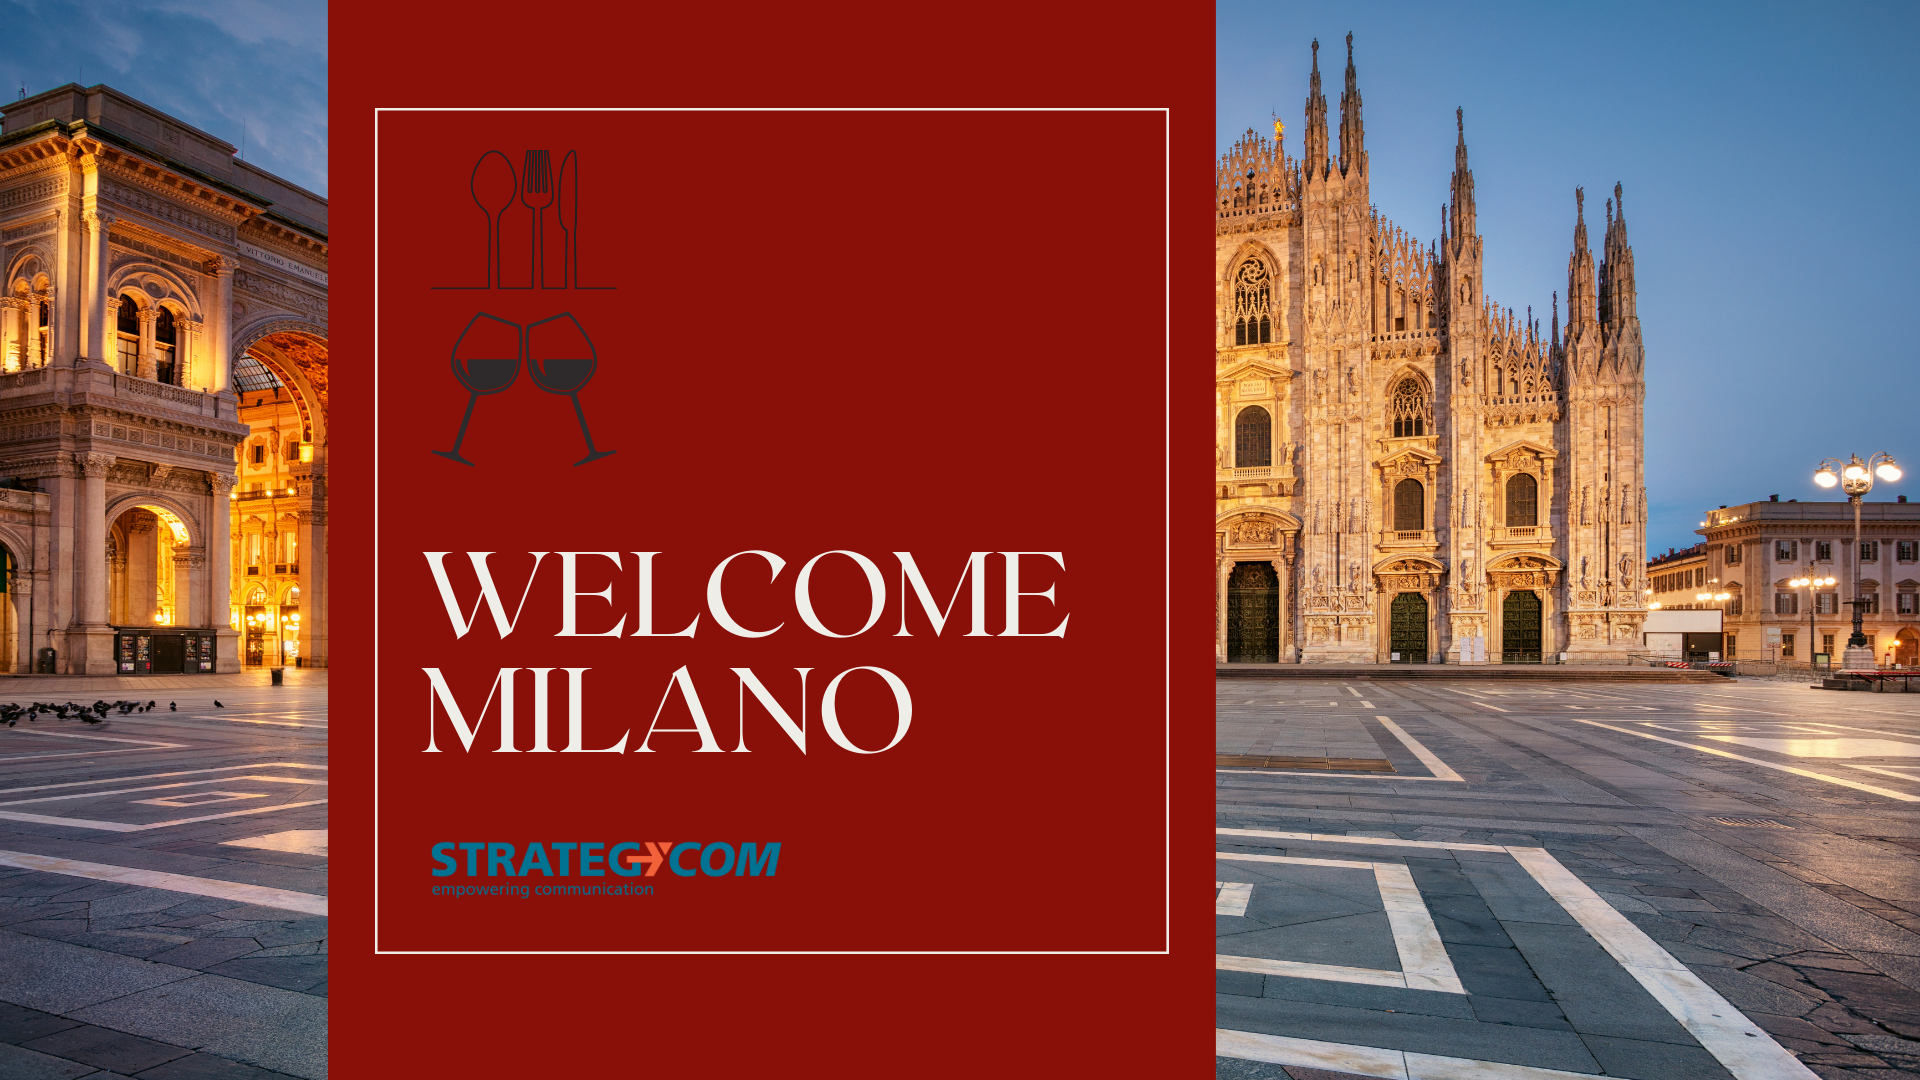 Welcome Milano, un progetto di relazioni e contatti